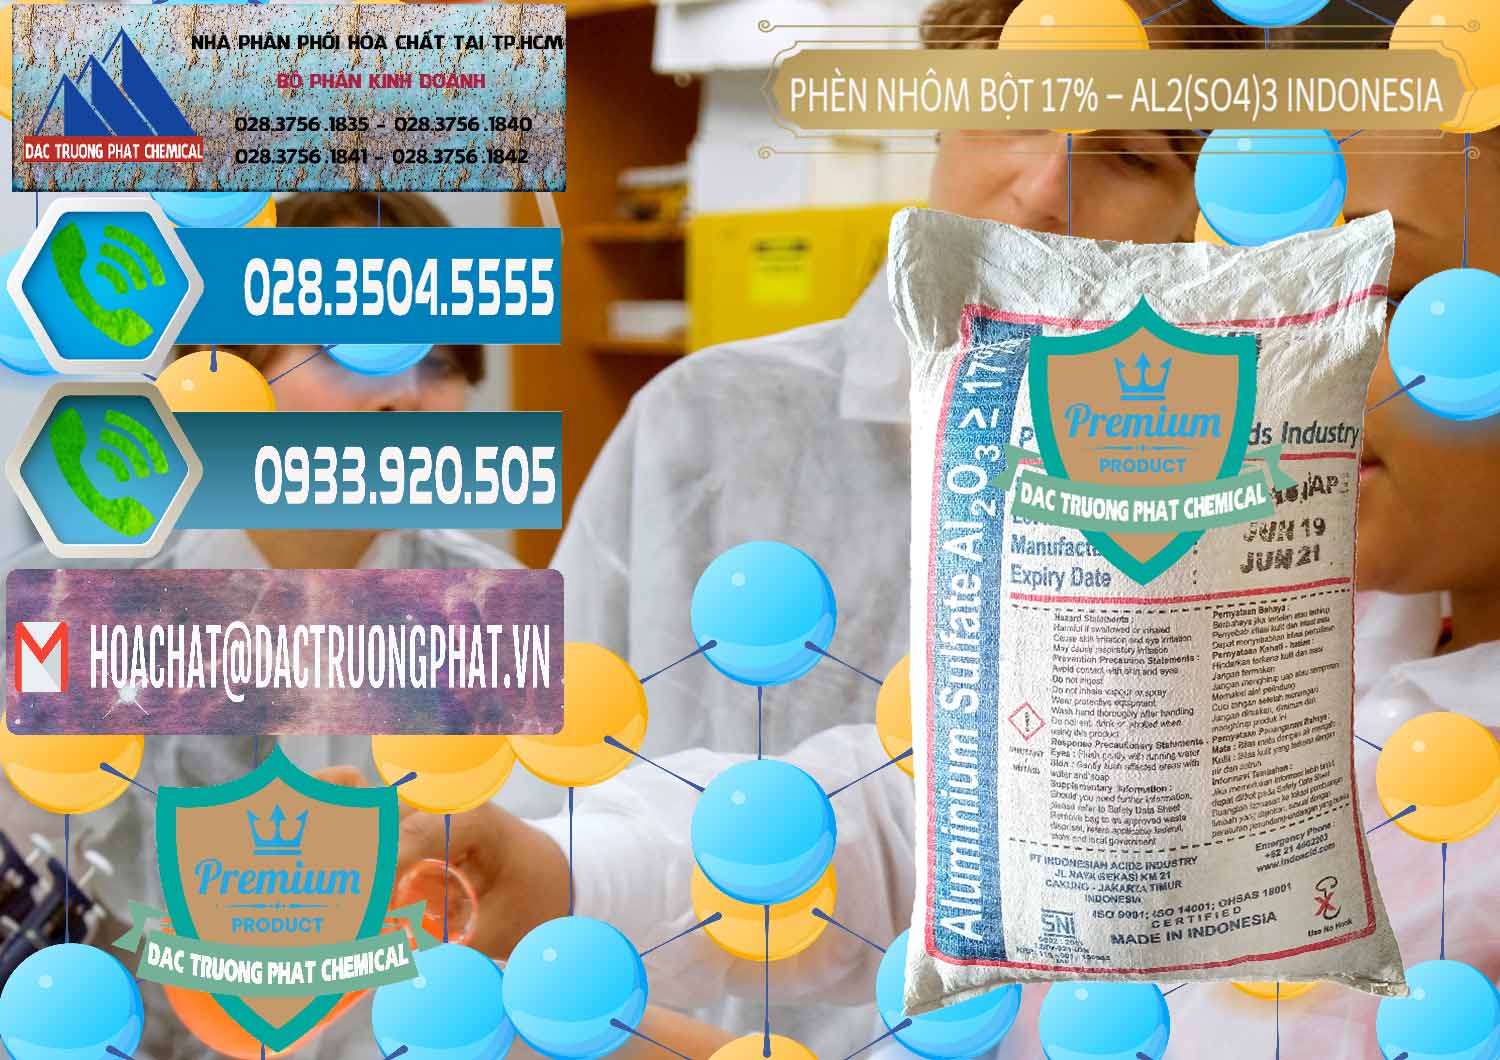 Cty nhập khẩu và bán Phèn Nhôm Bột - Al2(SO4)3 17% bao 25kg Indonesia - 0114 - Đơn vị kinh doanh & phân phối hóa chất tại TP.HCM - congtyhoachat.net